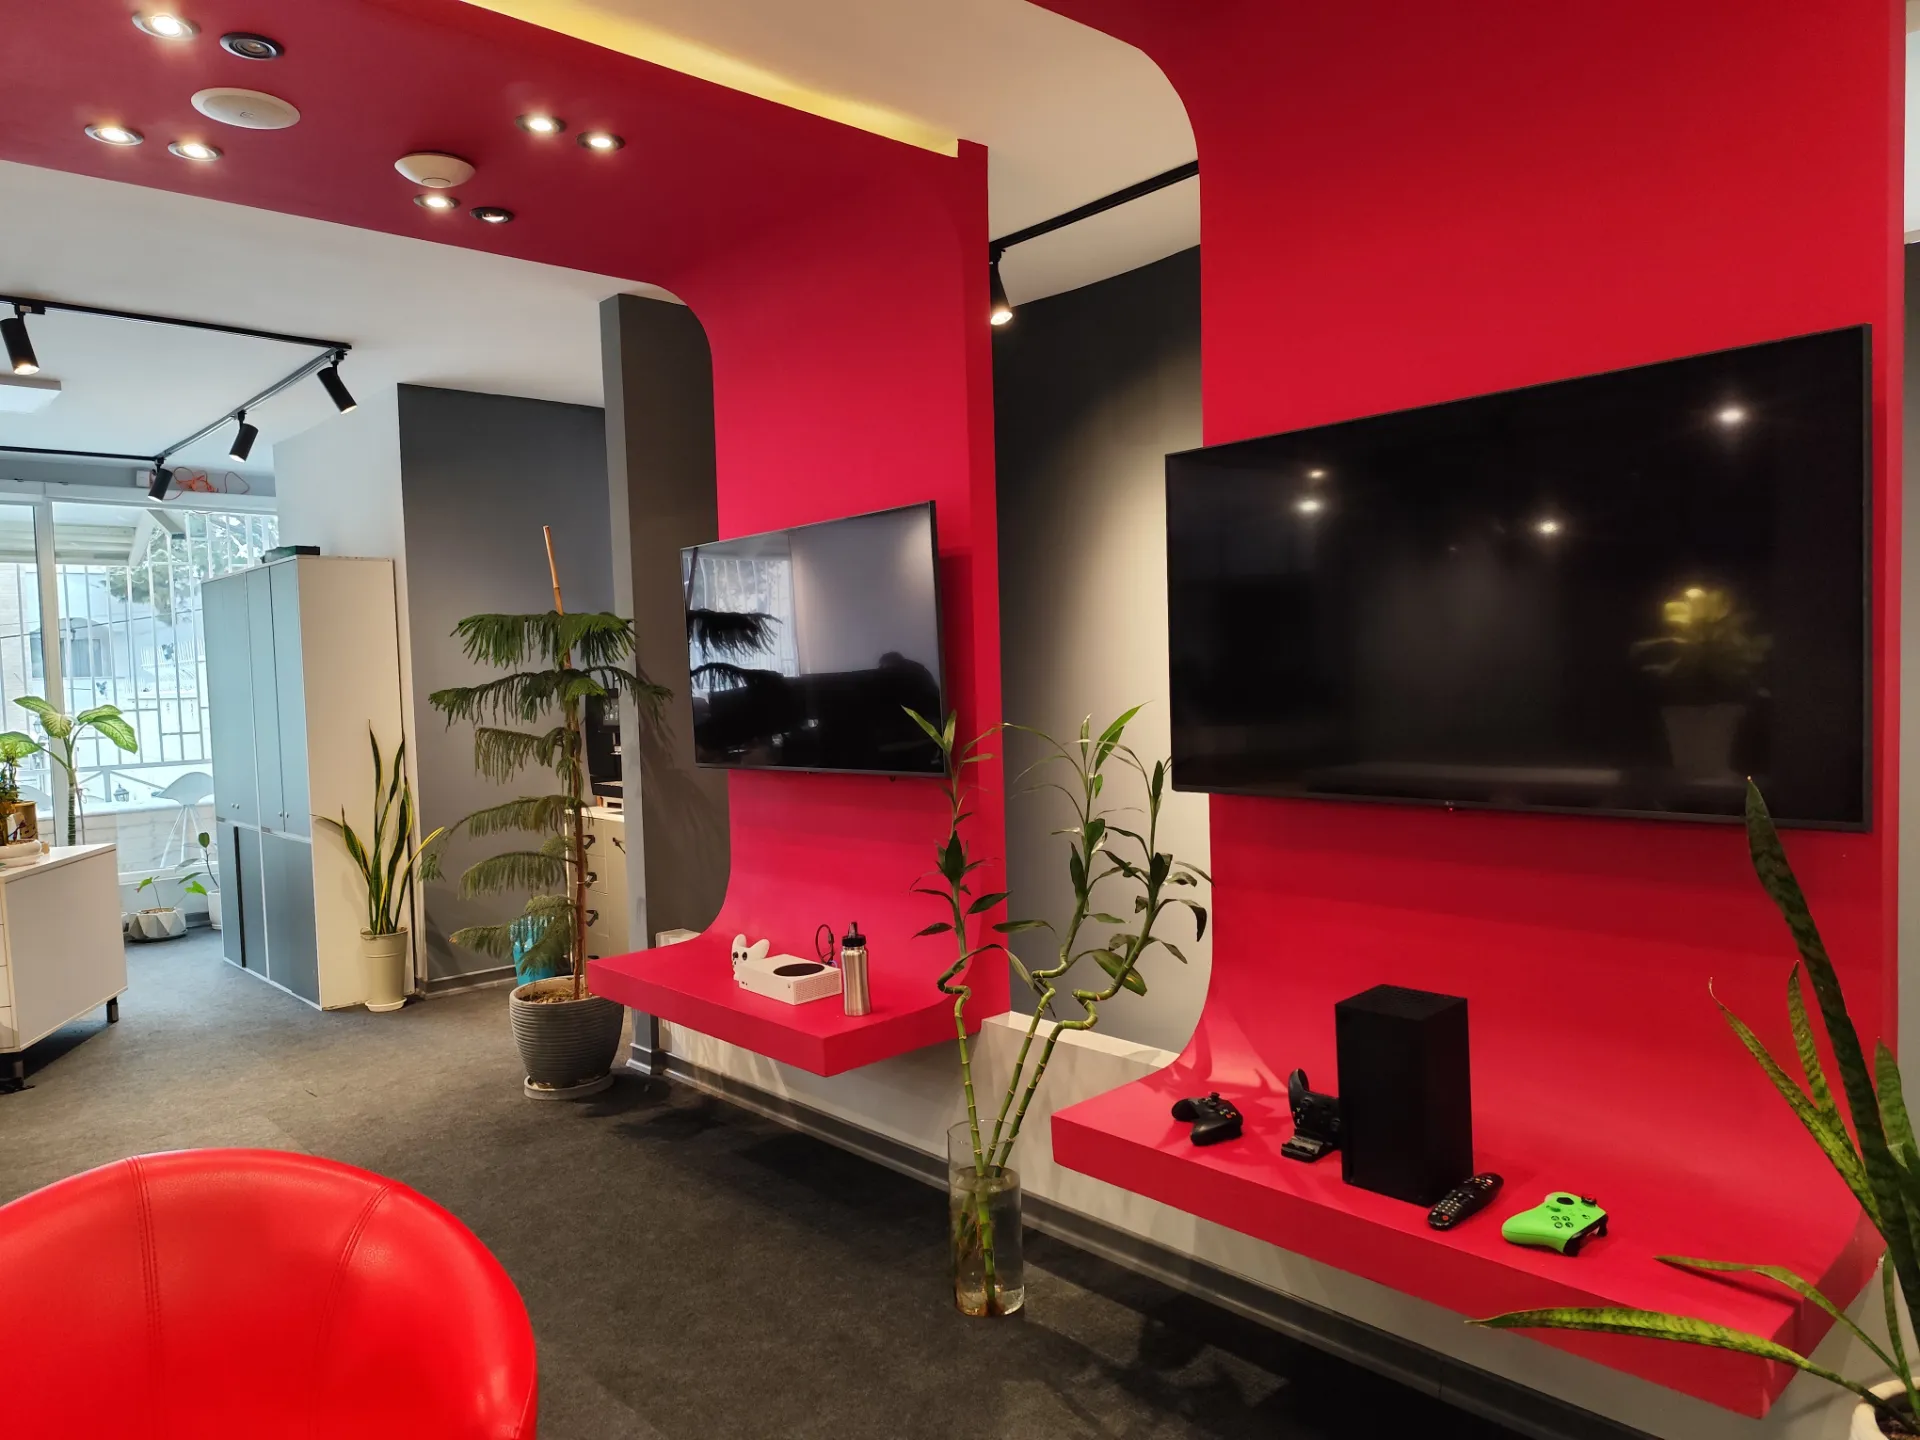 نمونه عکس ردمی نوت ۱۳ پرو 5G از محیط داخلی یک دفتر کار با دیوار قرمز و تلویزیون روی دیوار